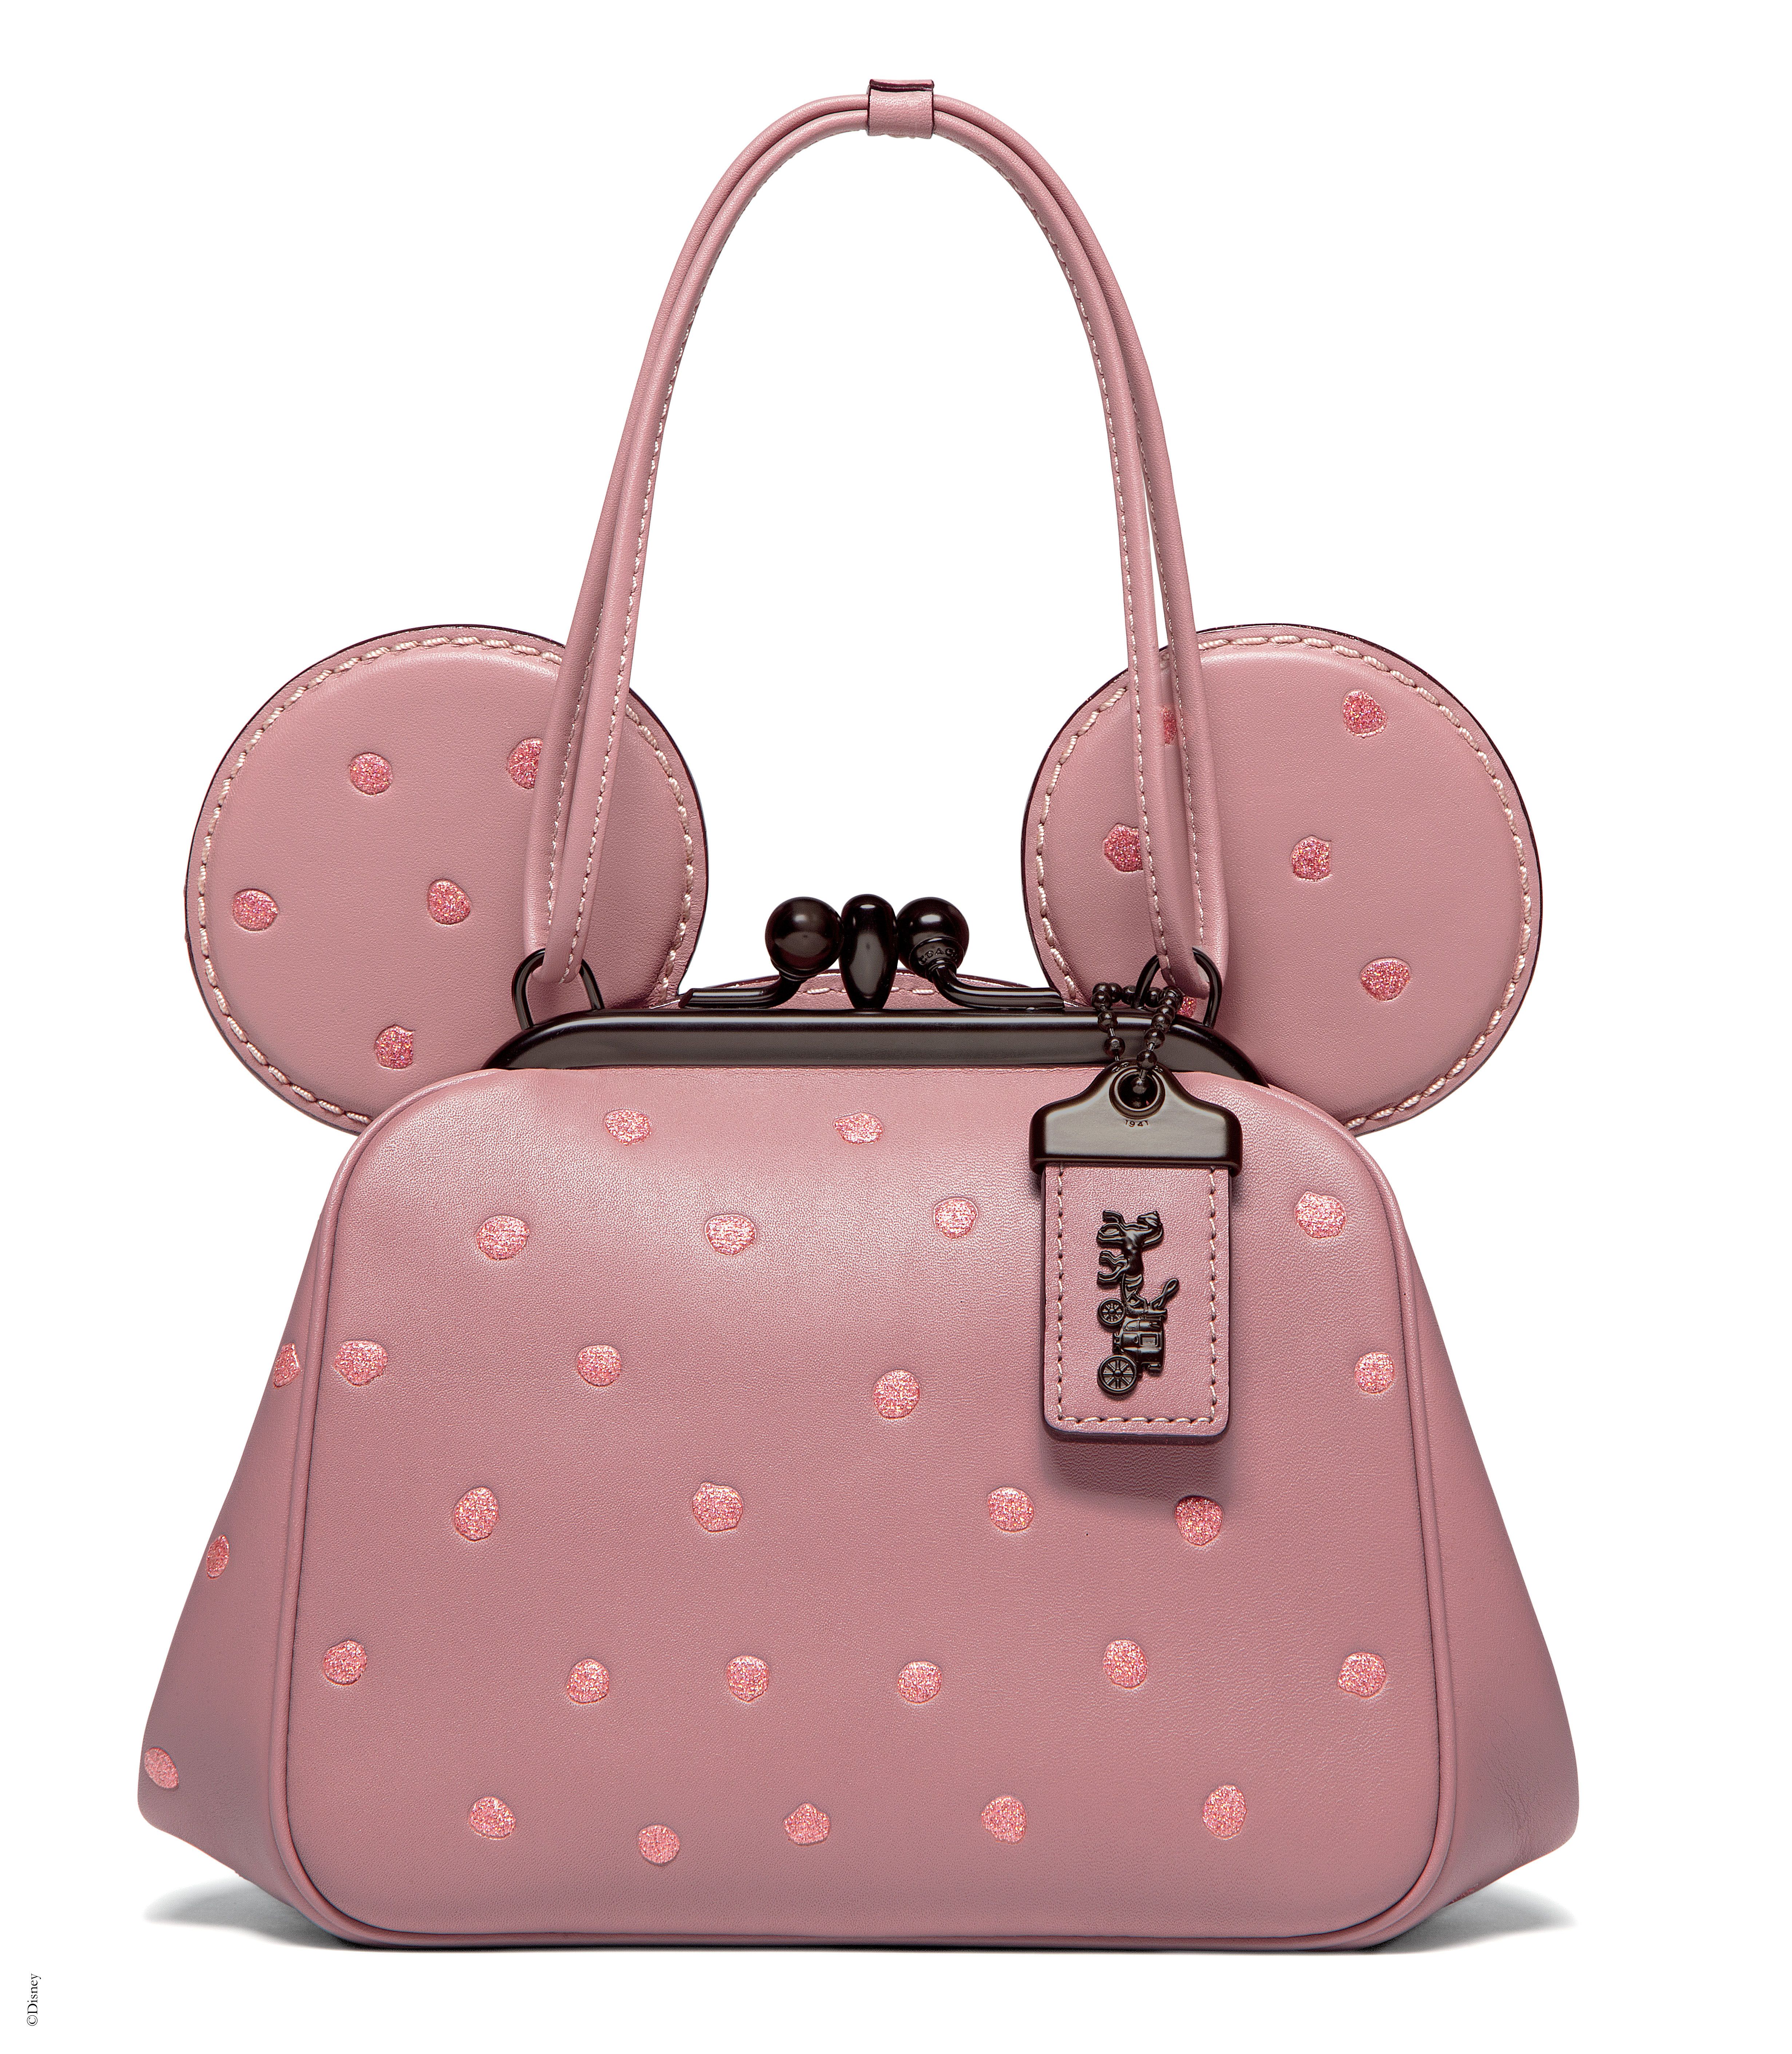 Disney x Coach Minnie Mouse Collection - Shop Minnie Mouse Coach